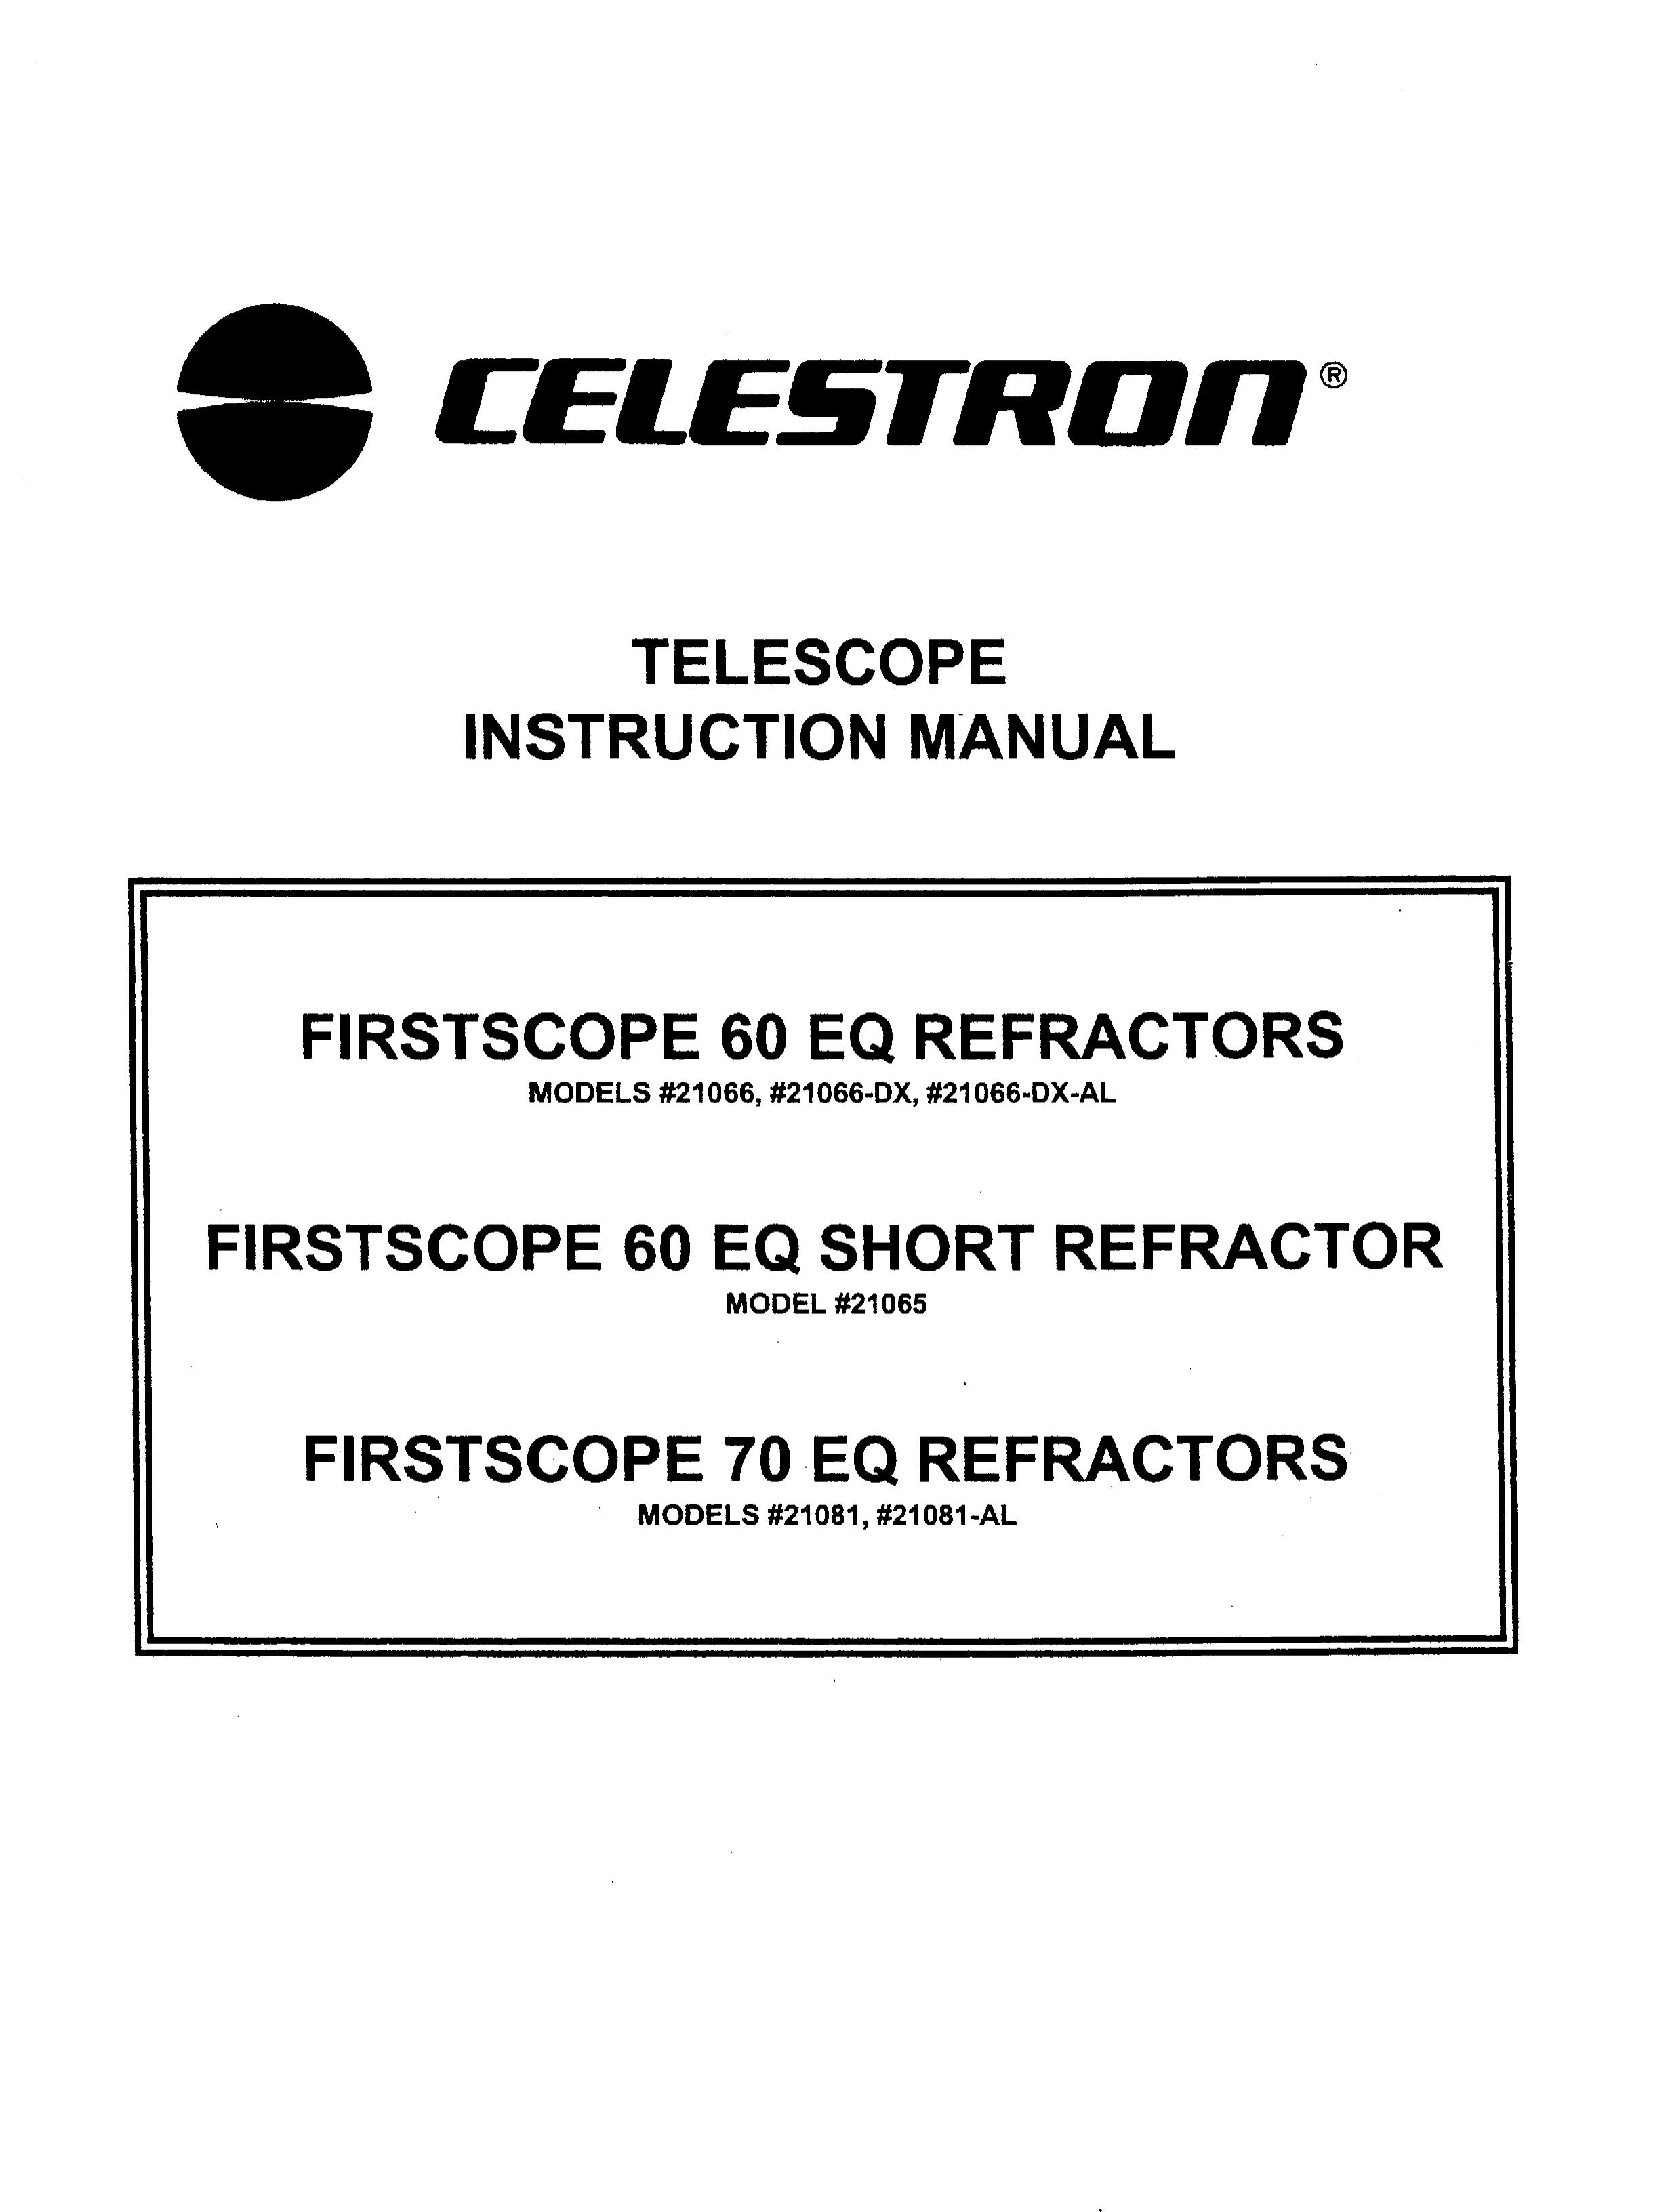 Celestron 21081-AL Telescope User Manual